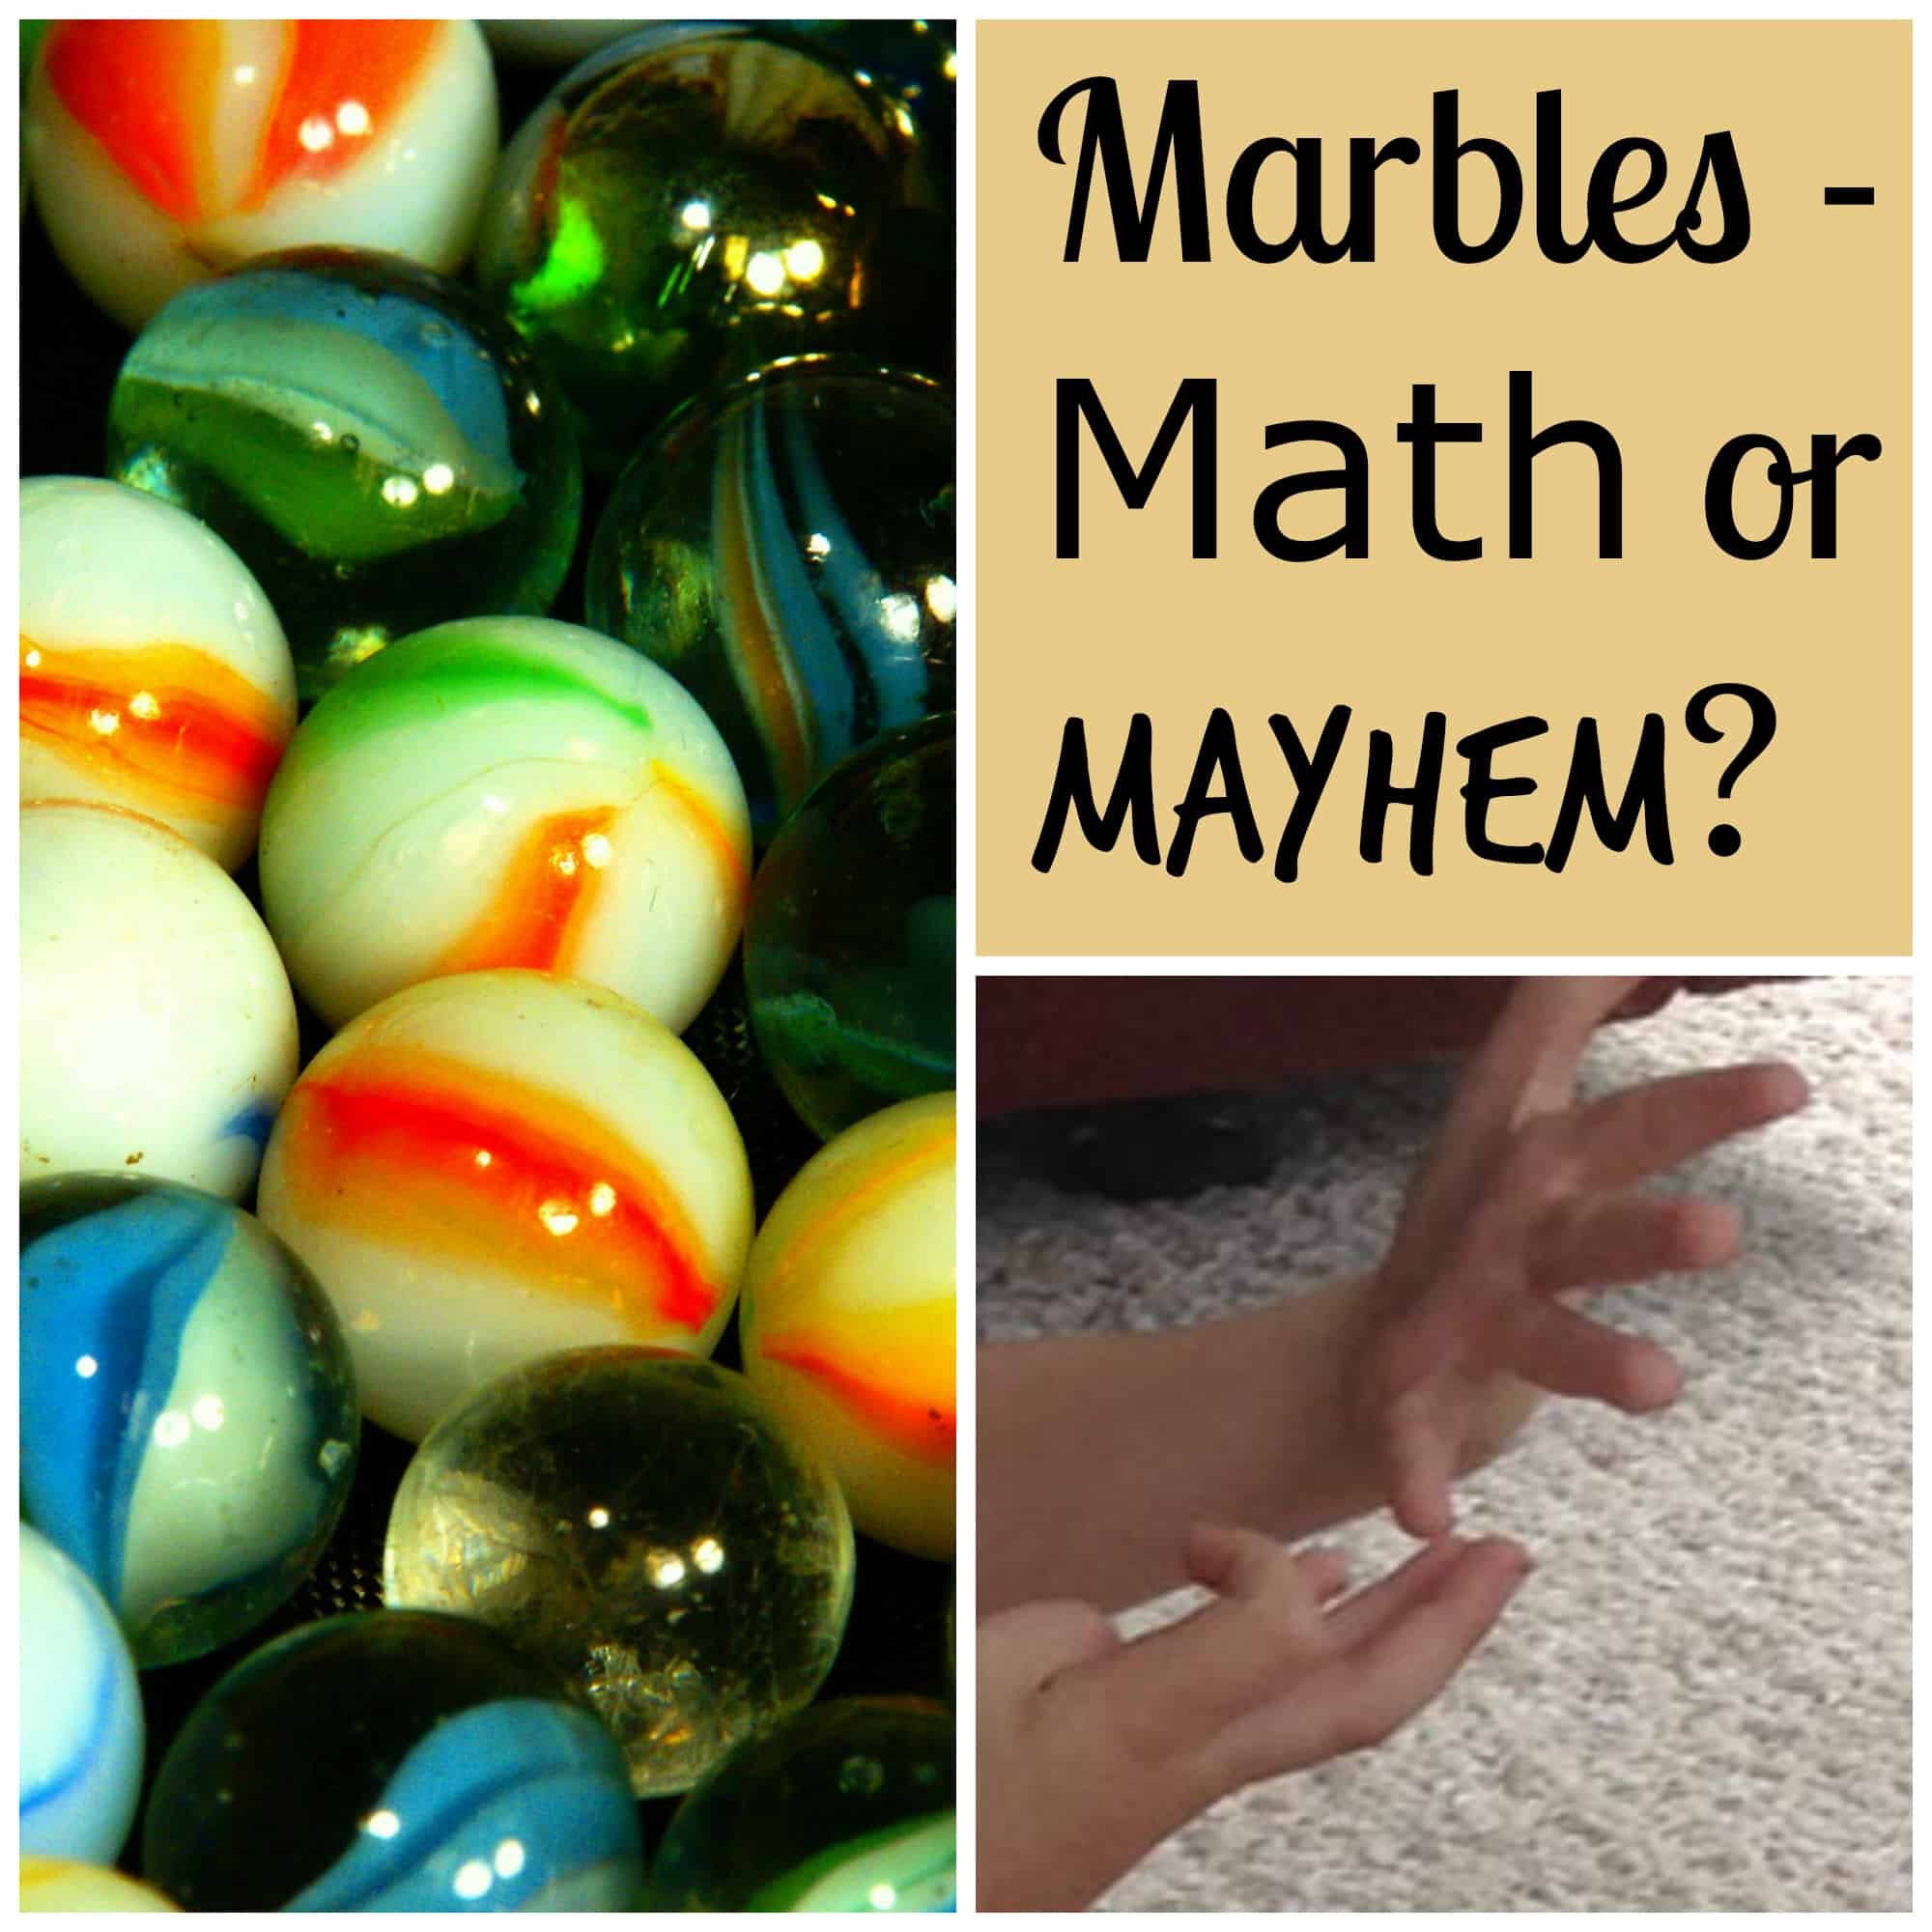 Marbles - Math or Mayhem